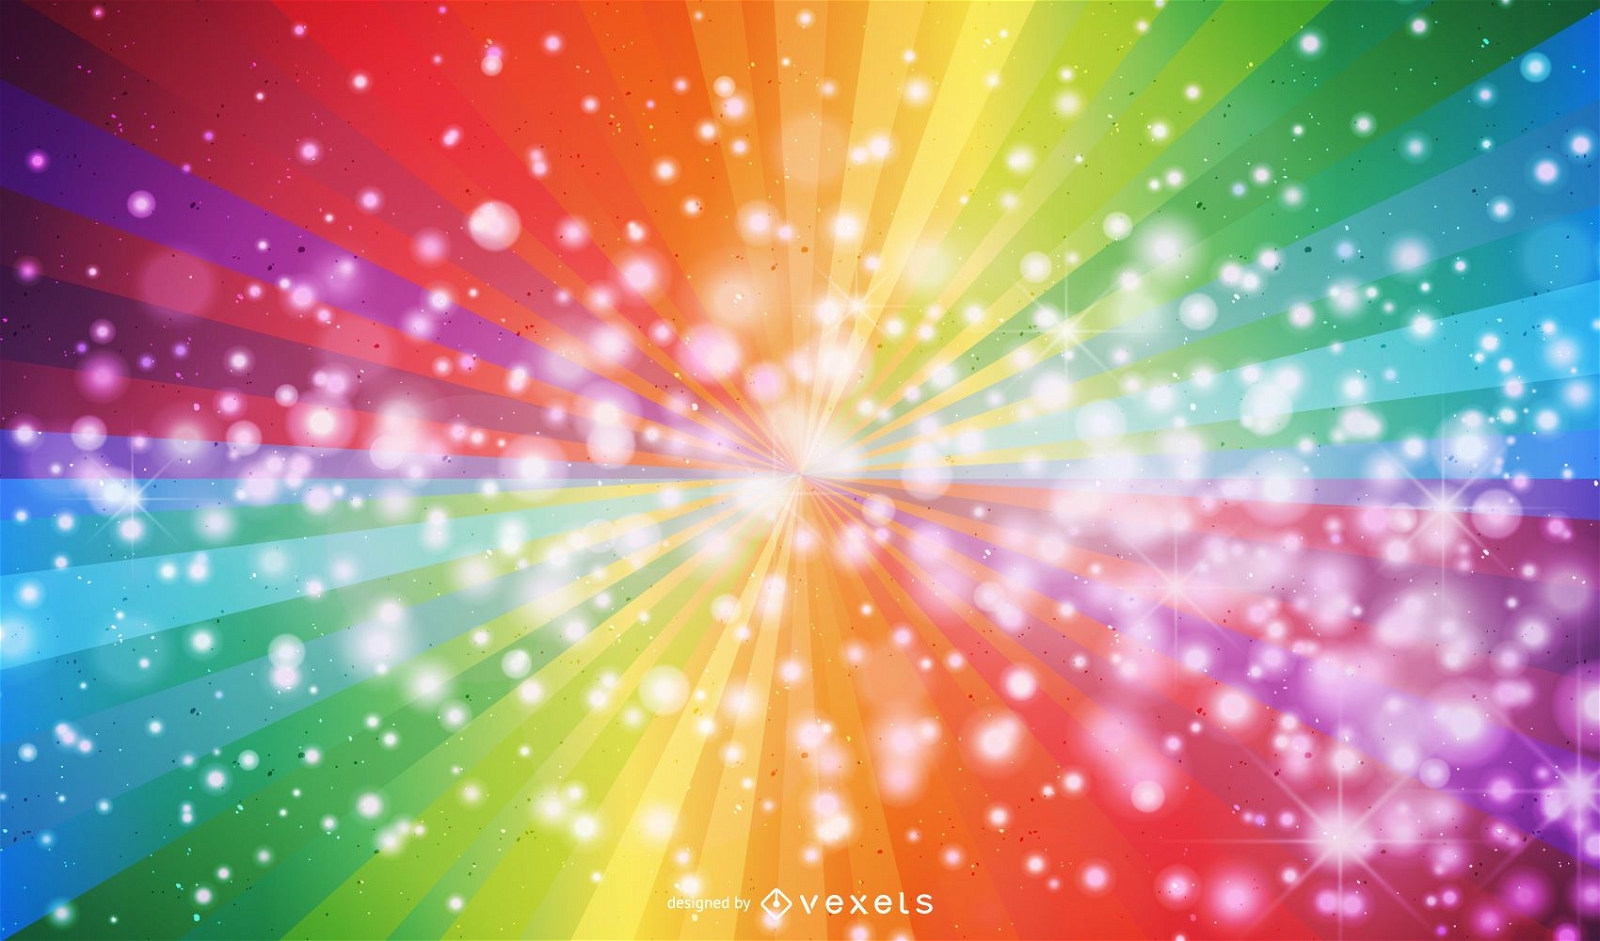 Dark Rainbow Vector With sparkles